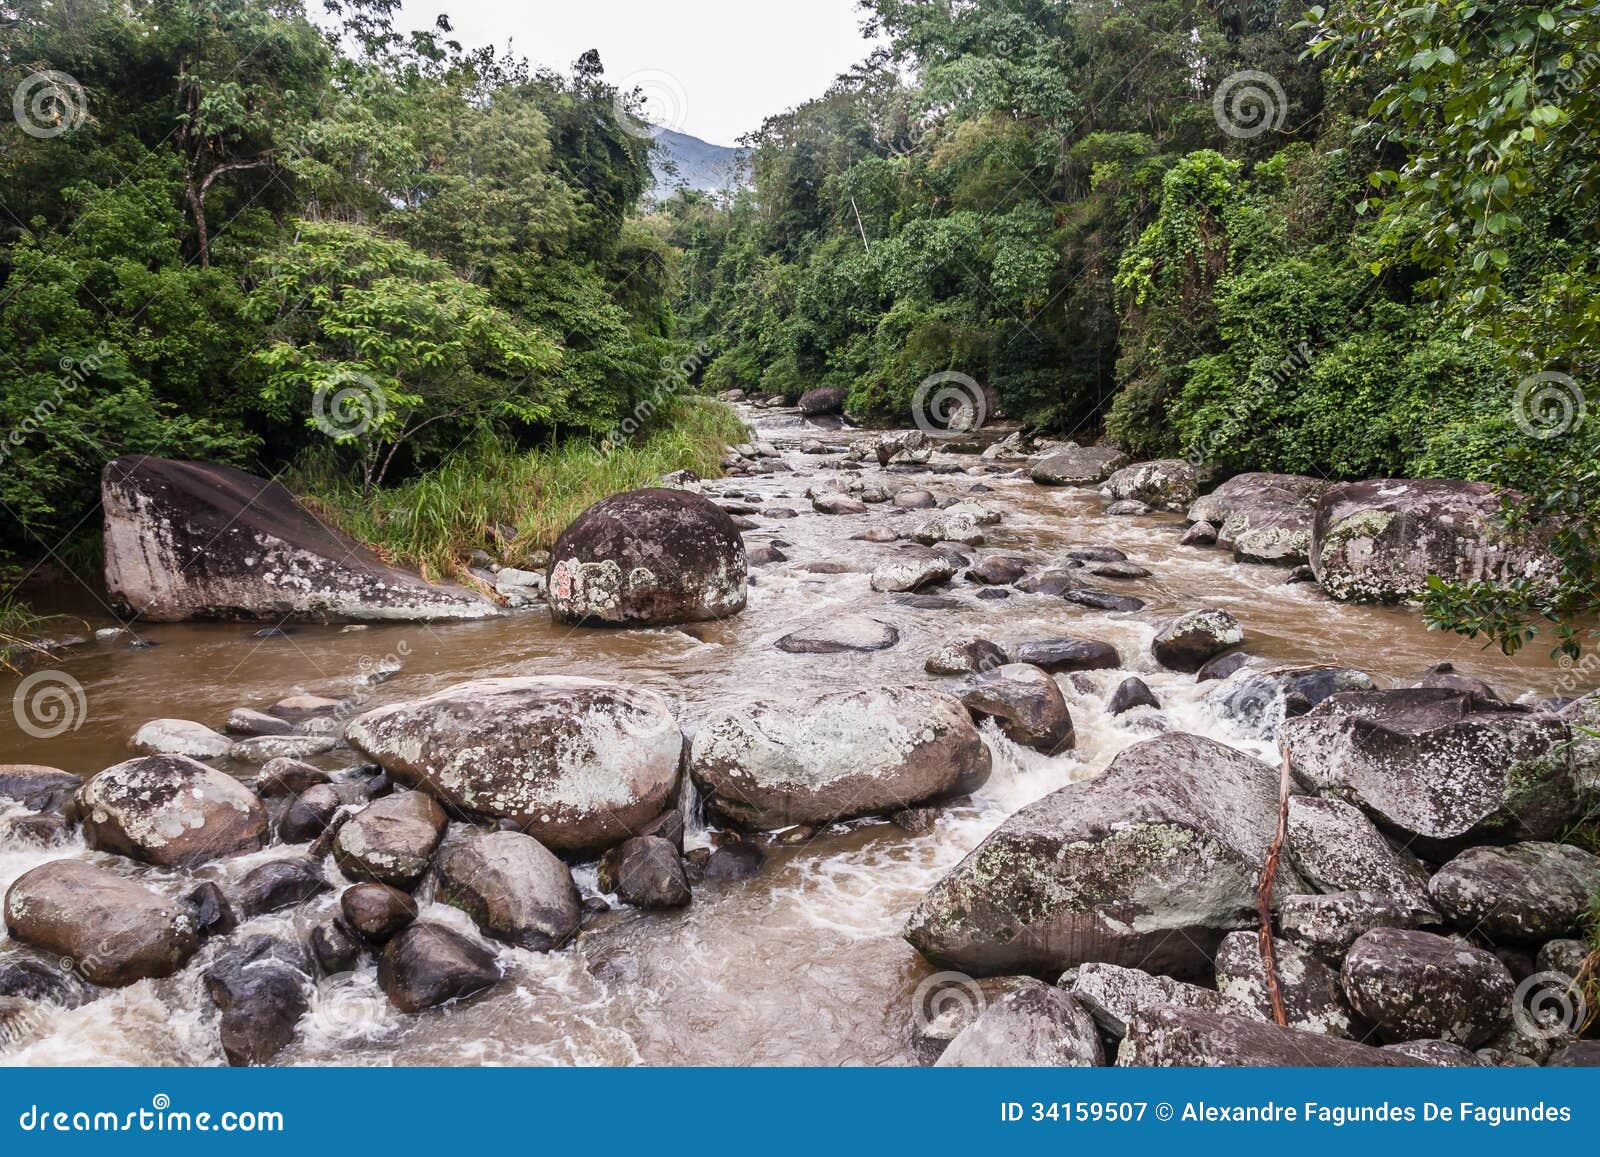 paraty caminho real rio de janeiro brazil